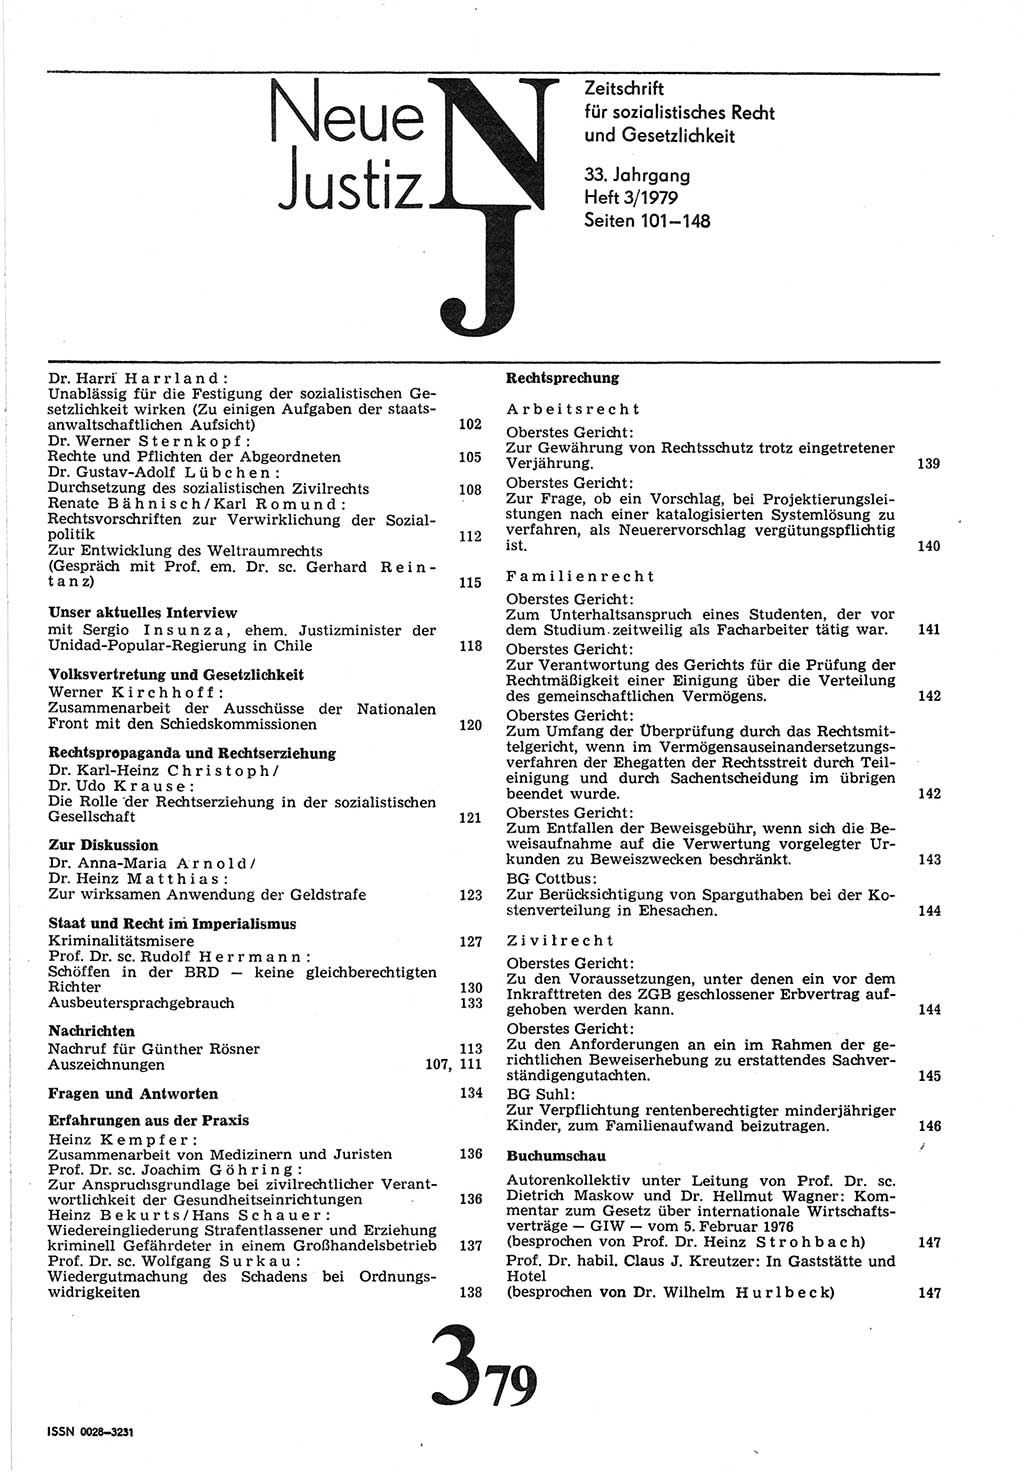 Neue Justiz (NJ), Zeitschrift für sozialistisches Recht und Gesetzlichkeit [Deutsche Demokratische Republik (DDR)], 33. Jahrgang 1979, Seite 101 (NJ DDR 1979, S. 101)